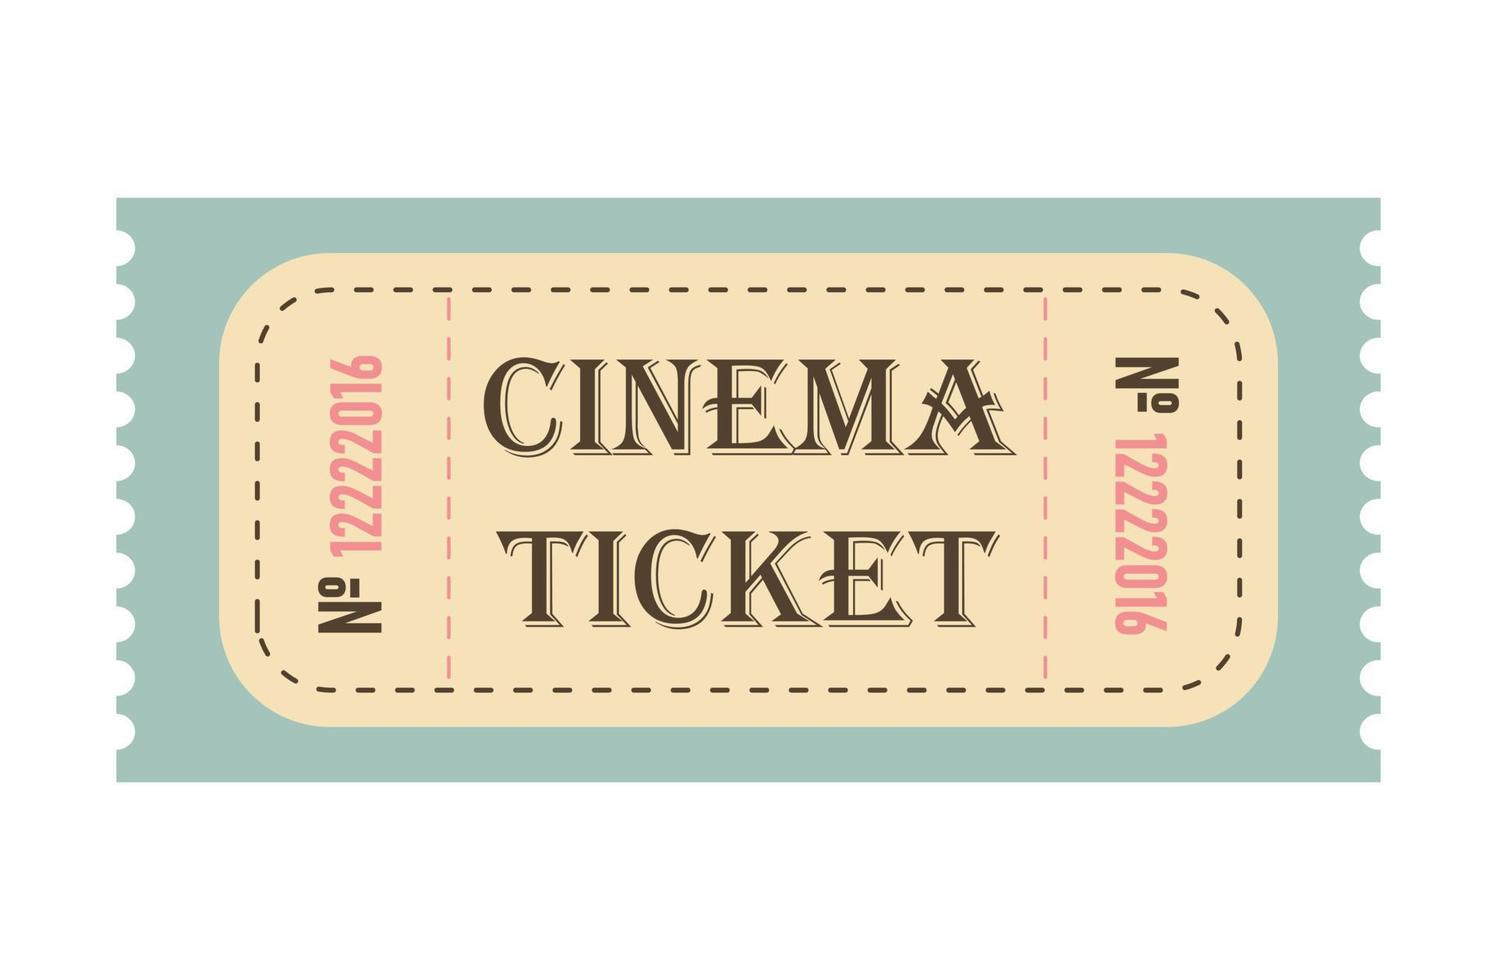 klassisk retro biljett för bio, cirkus, film, teater, kryssning, konsert och Övrig evenemang. gammal årgång stil i pastell färger. vektor